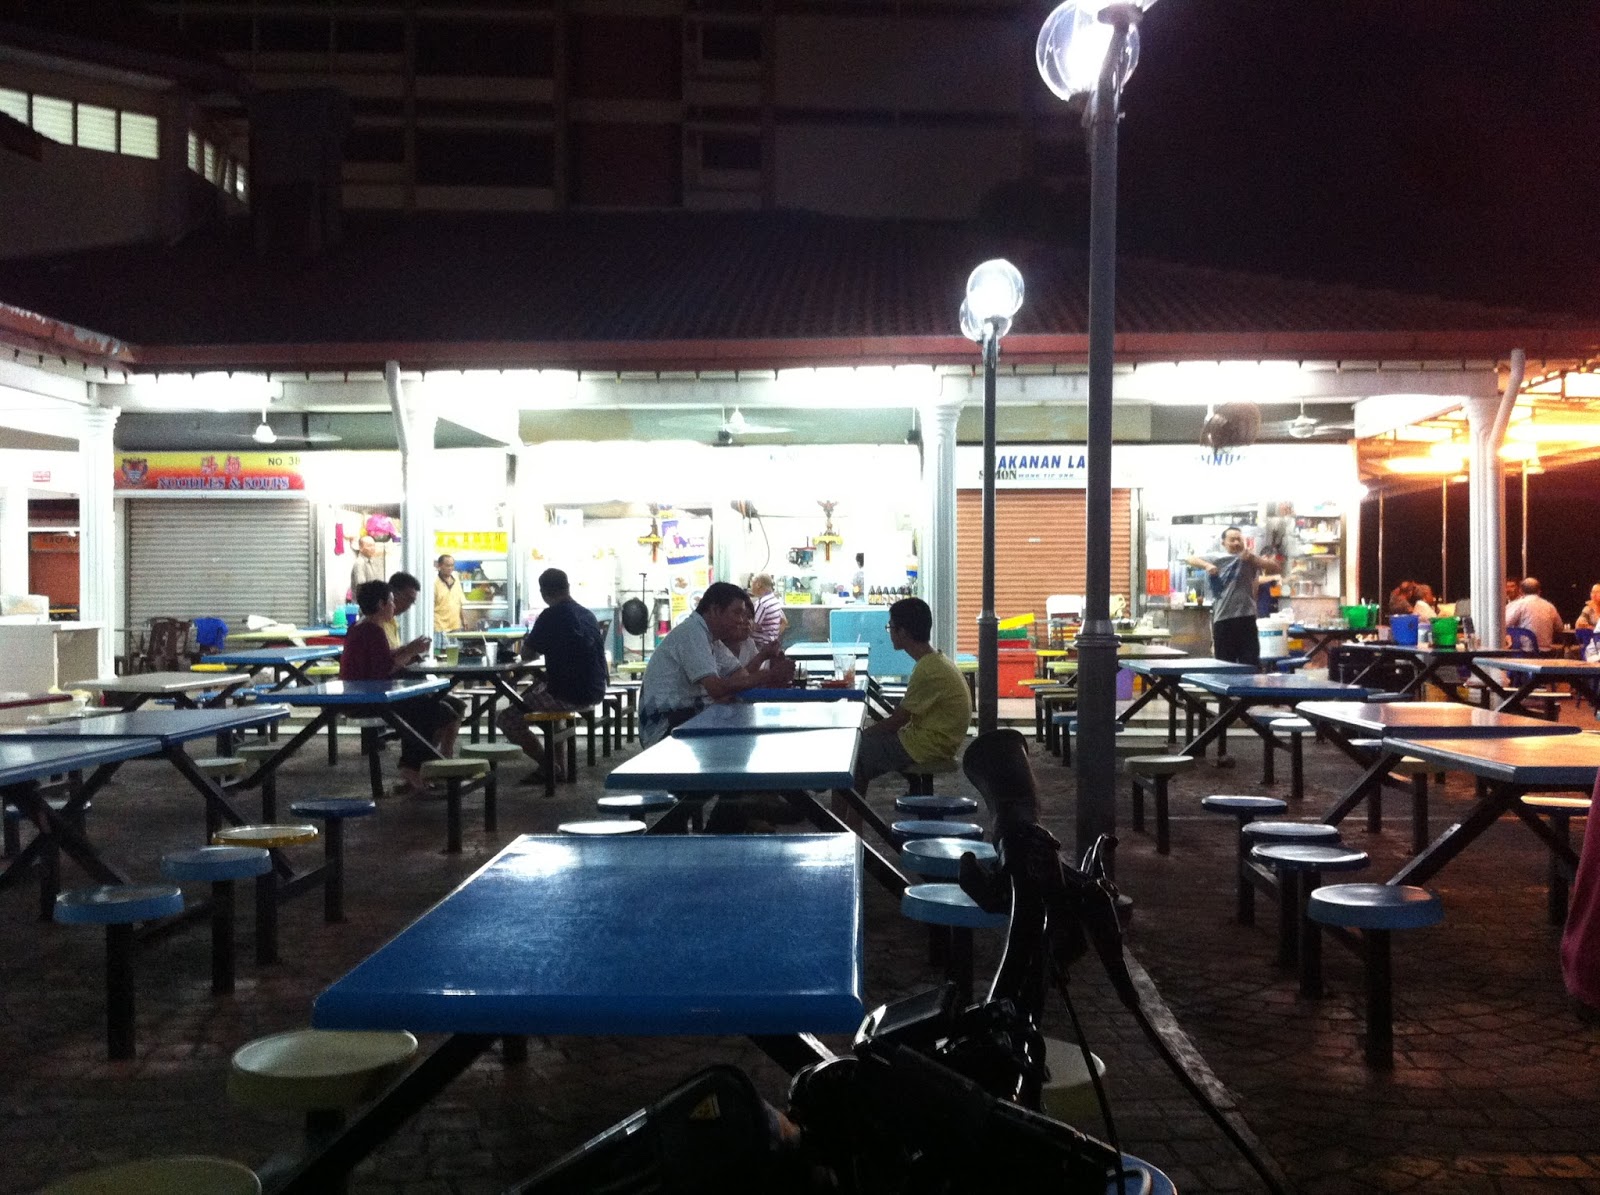 Our Journey : Penang Georgetown - Esplanade Medan Renong Food Court